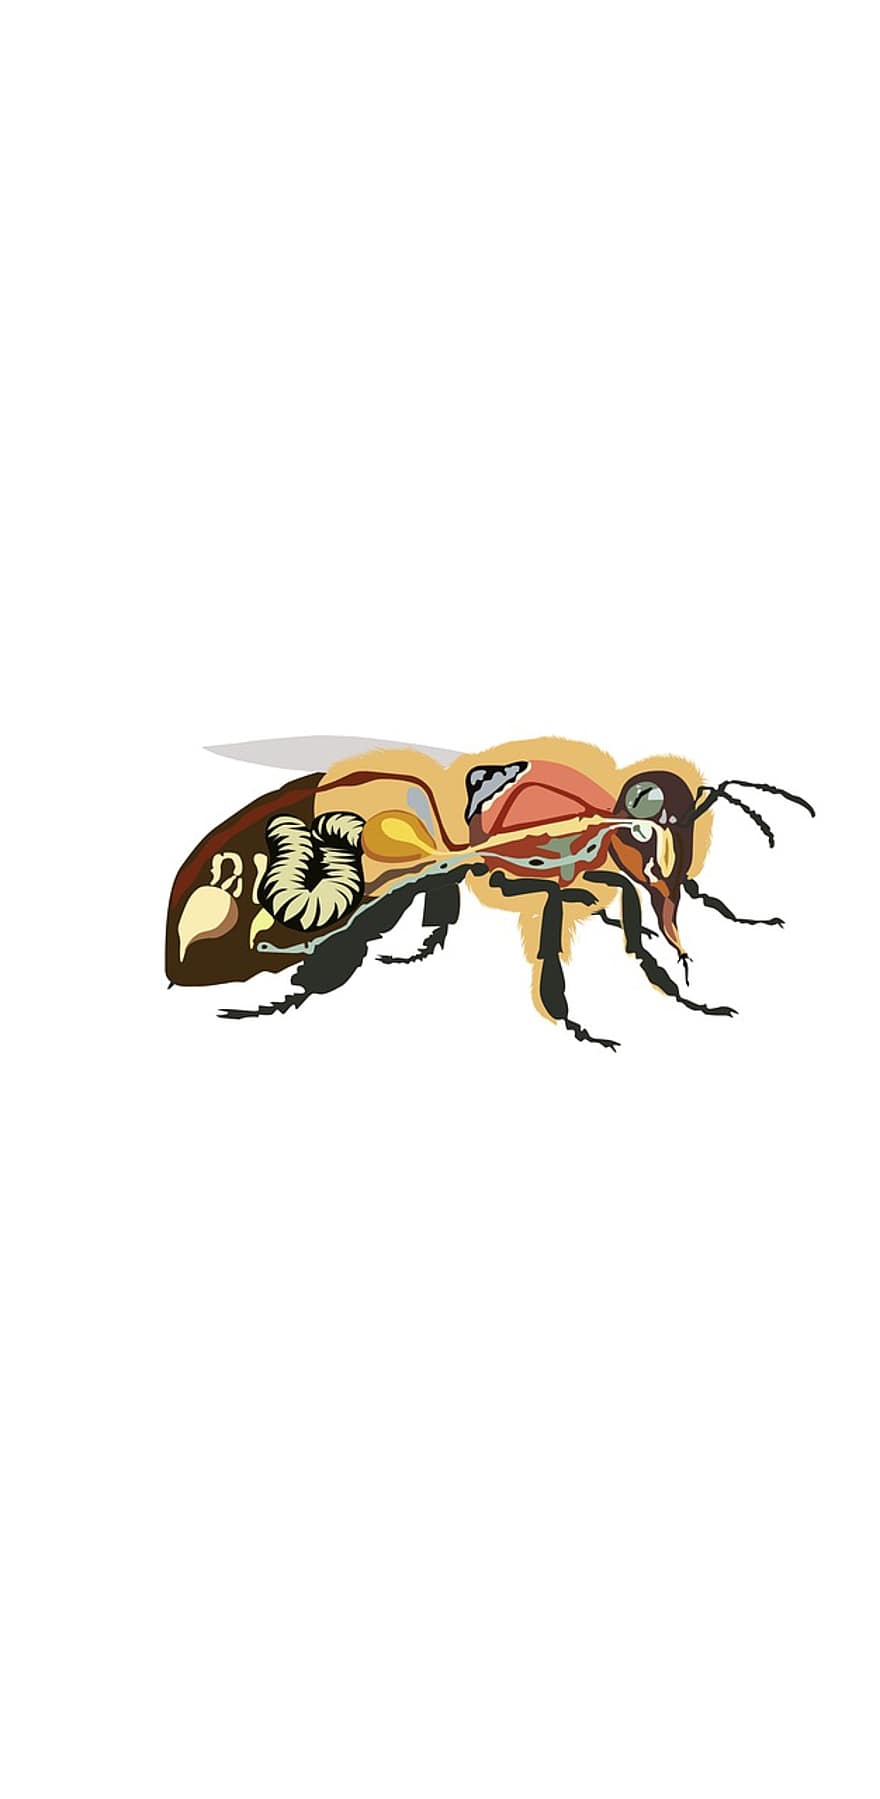 arı anatomisi, bal arısı, böcek, bal, anatomi, çizim, örnekleme, karınca, yaban arısı, vektör, dizayn